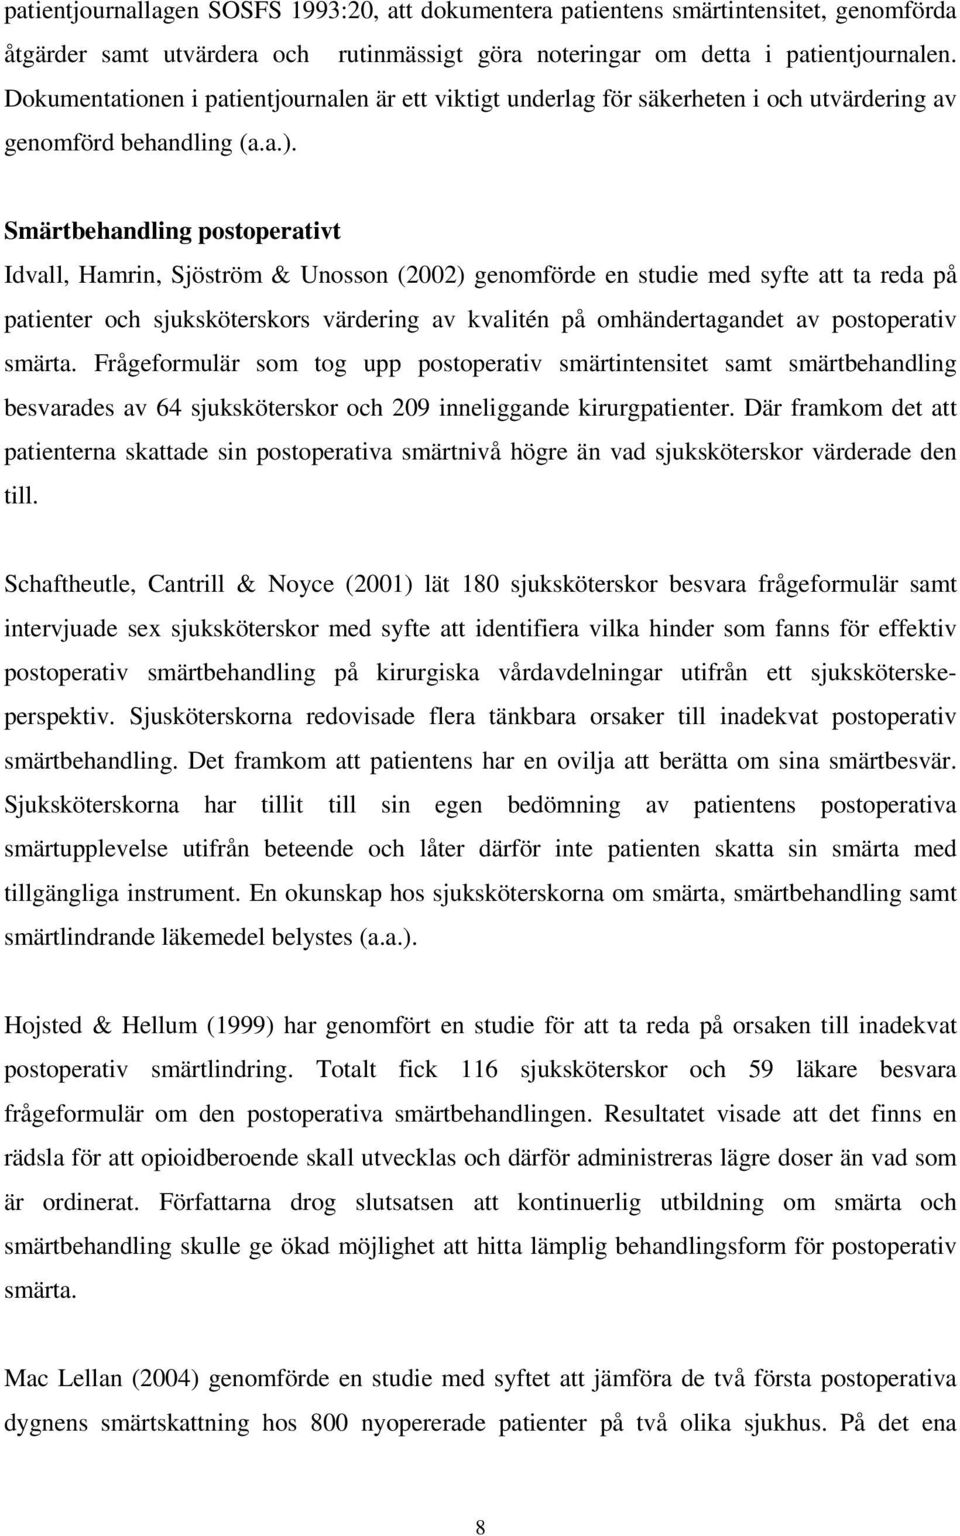 Smärtbehandling postoperativt Idvall, Hamrin, Sjöström & Unosson (2002) genomförde en studie med syfte att ta reda på patienter och sjuksköterskors värdering av kvalitén på omhändertagandet av